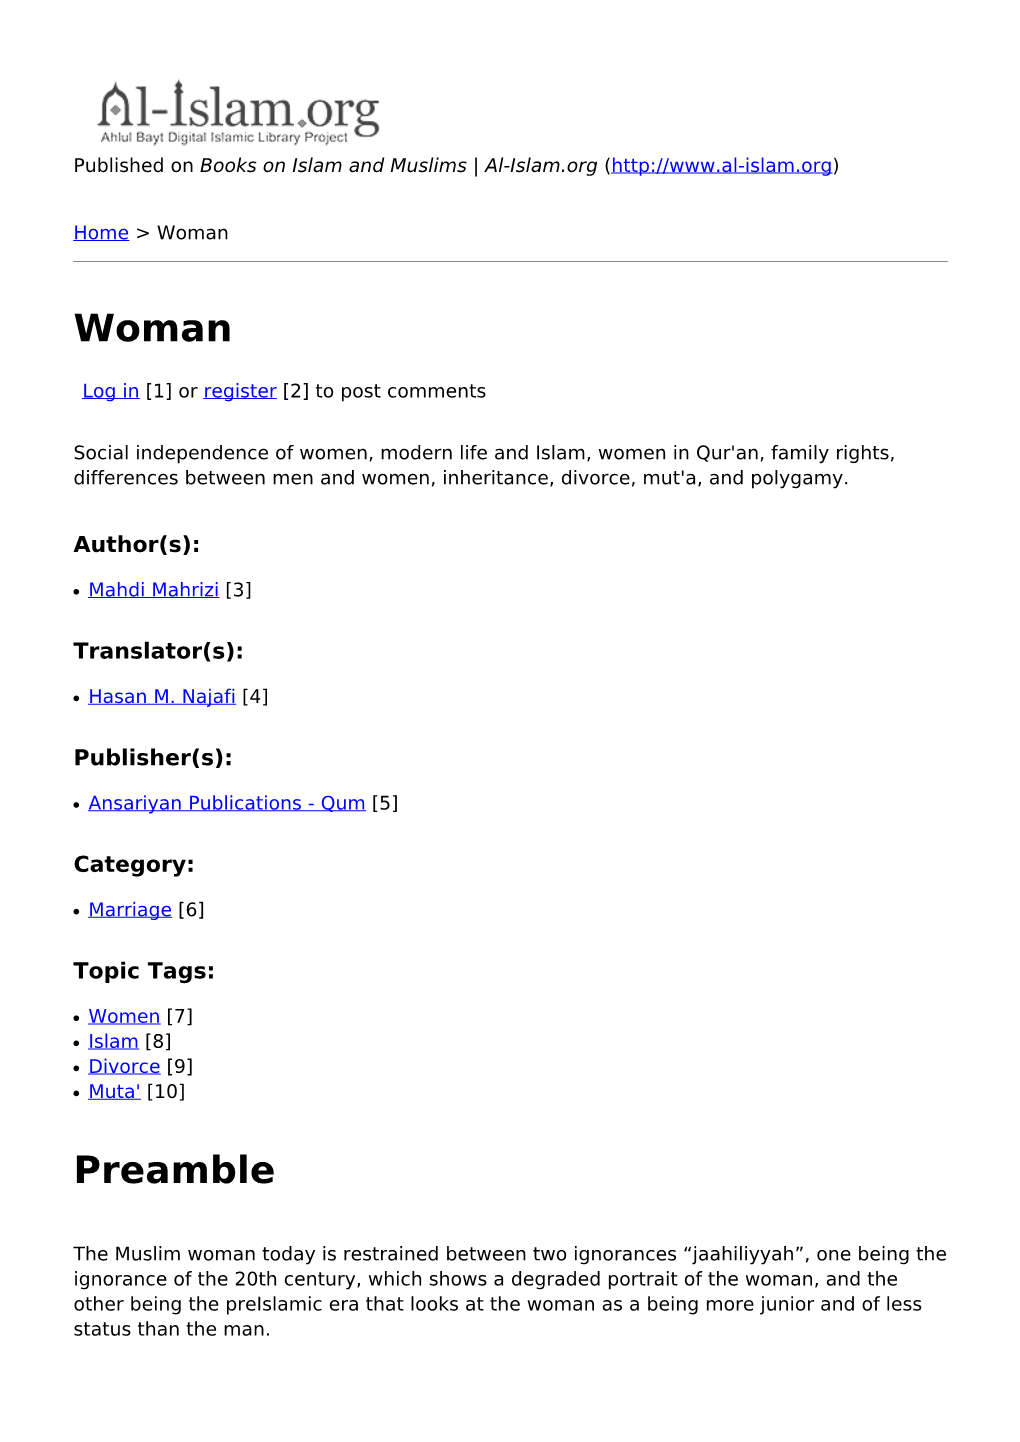 Woman Preamble